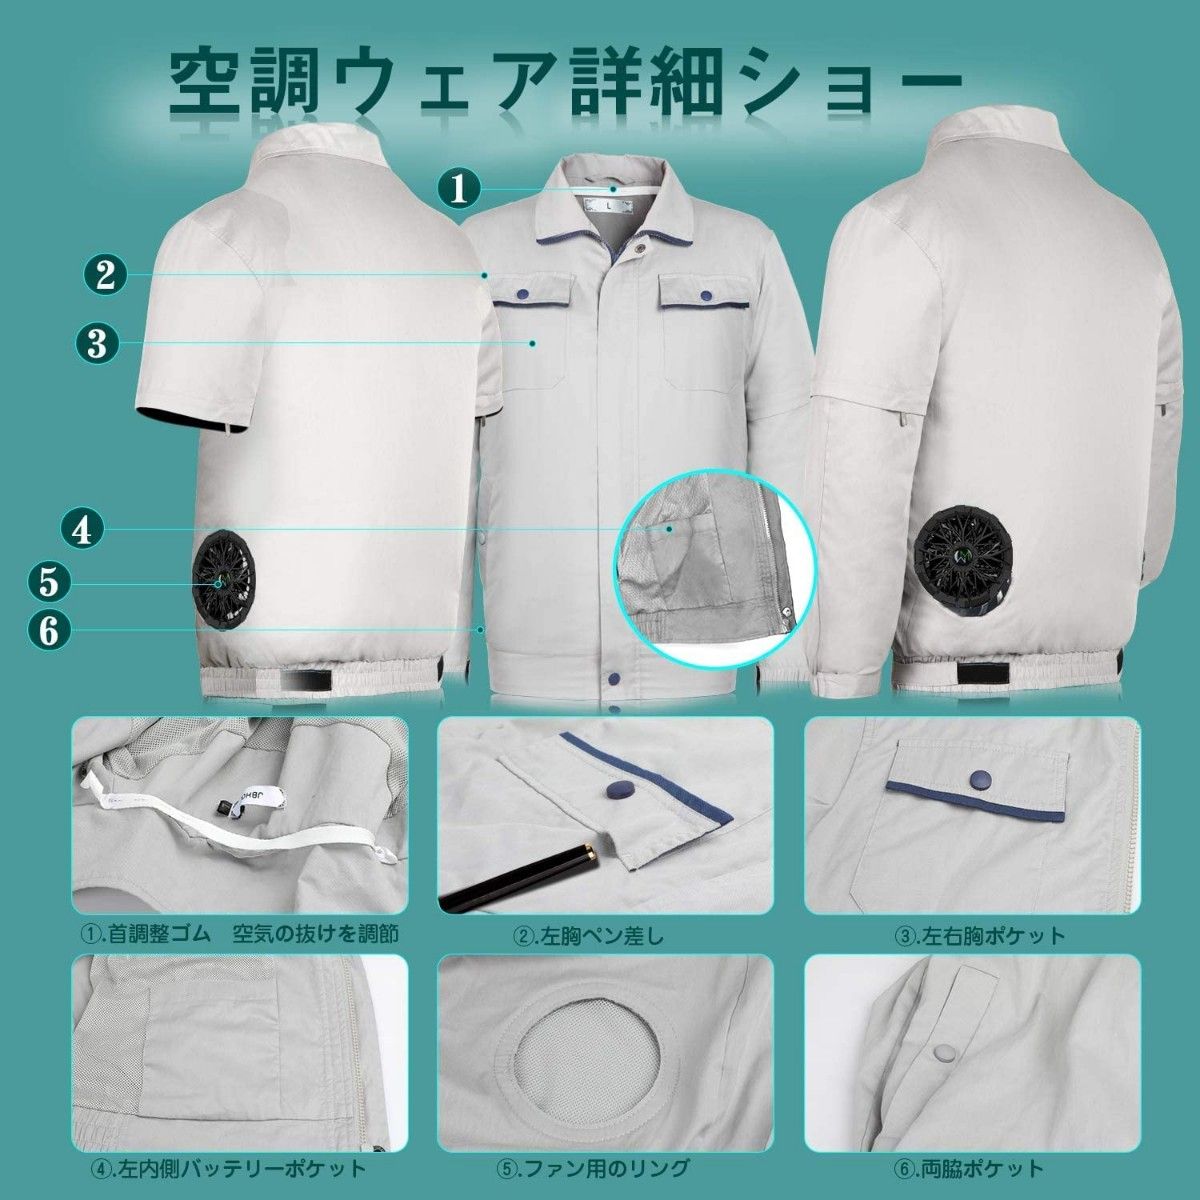 【XL】空調作業服 空調ウェア 扇風服 作業服 作業着 ファン付き